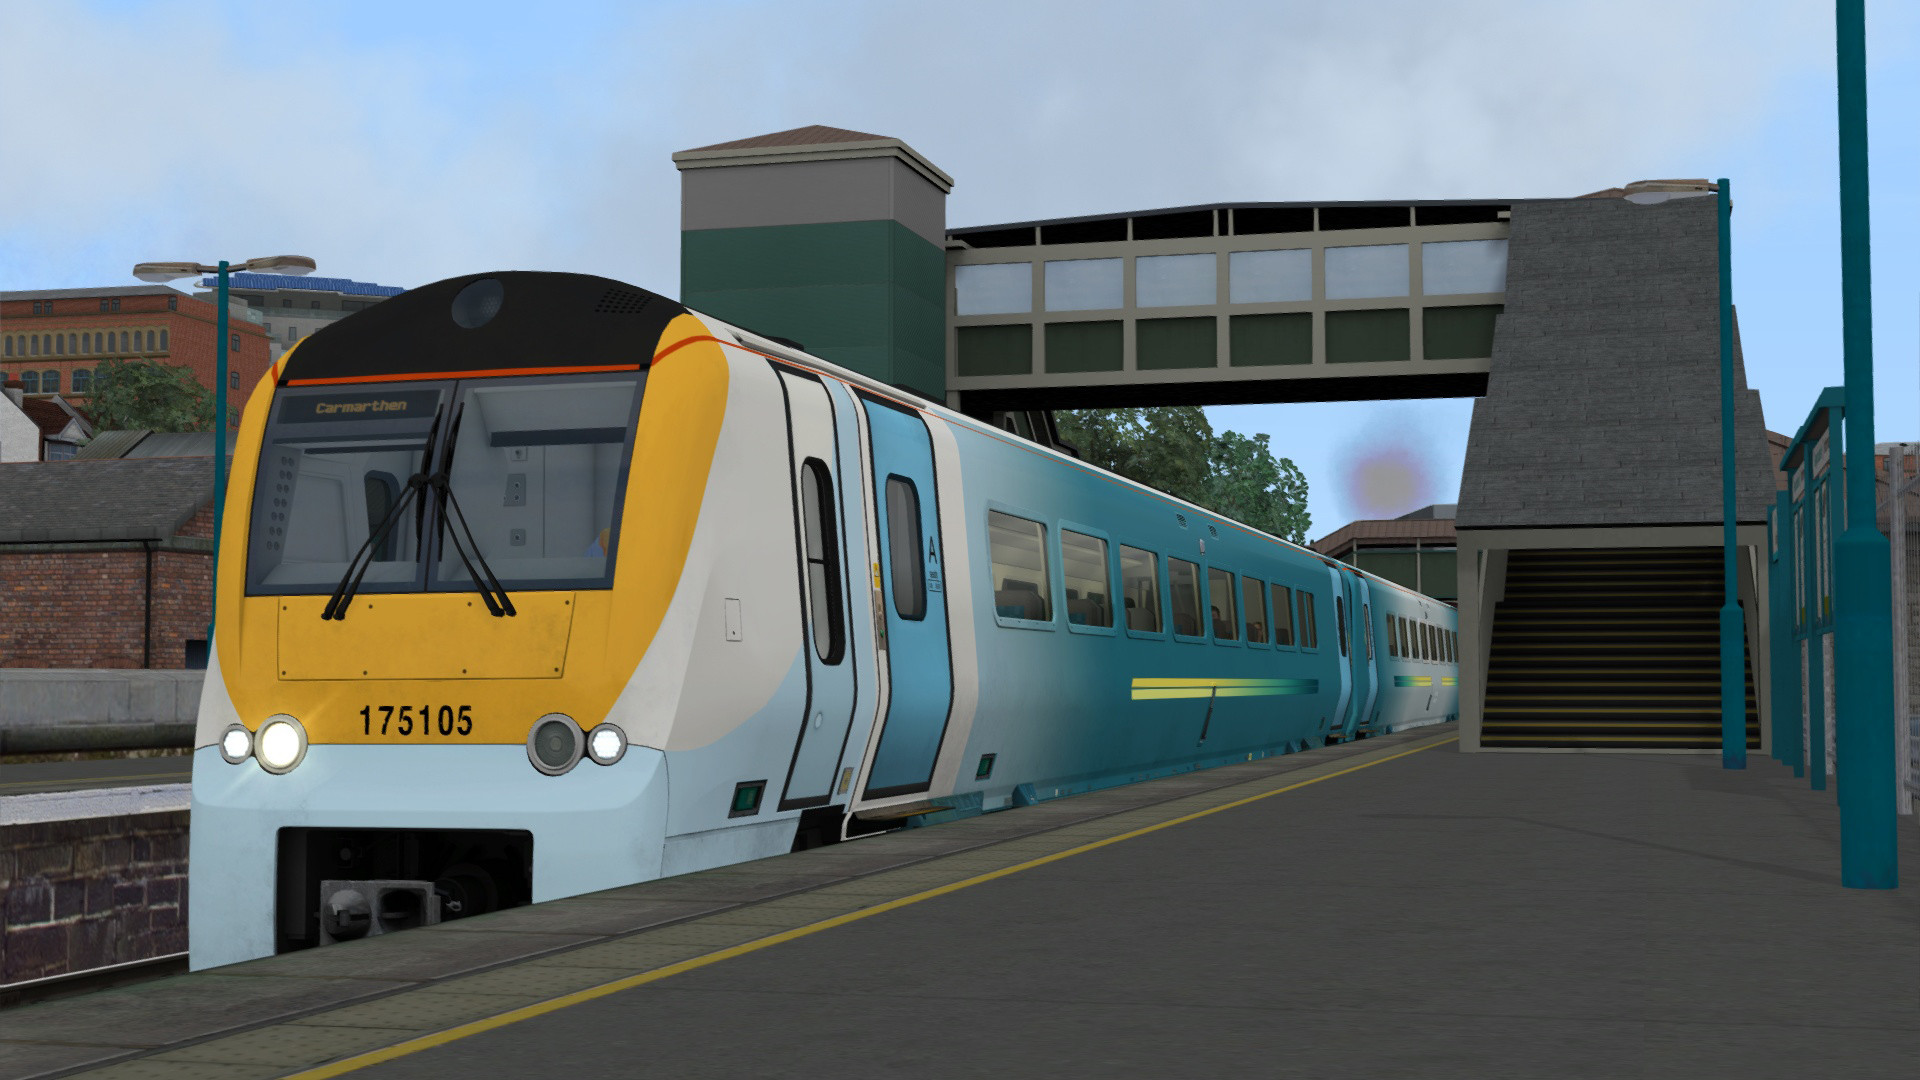 Train Simulator - South Wales Coastal: Bristol - Swansea Route Add-on DLC Steam CD Key $4.17